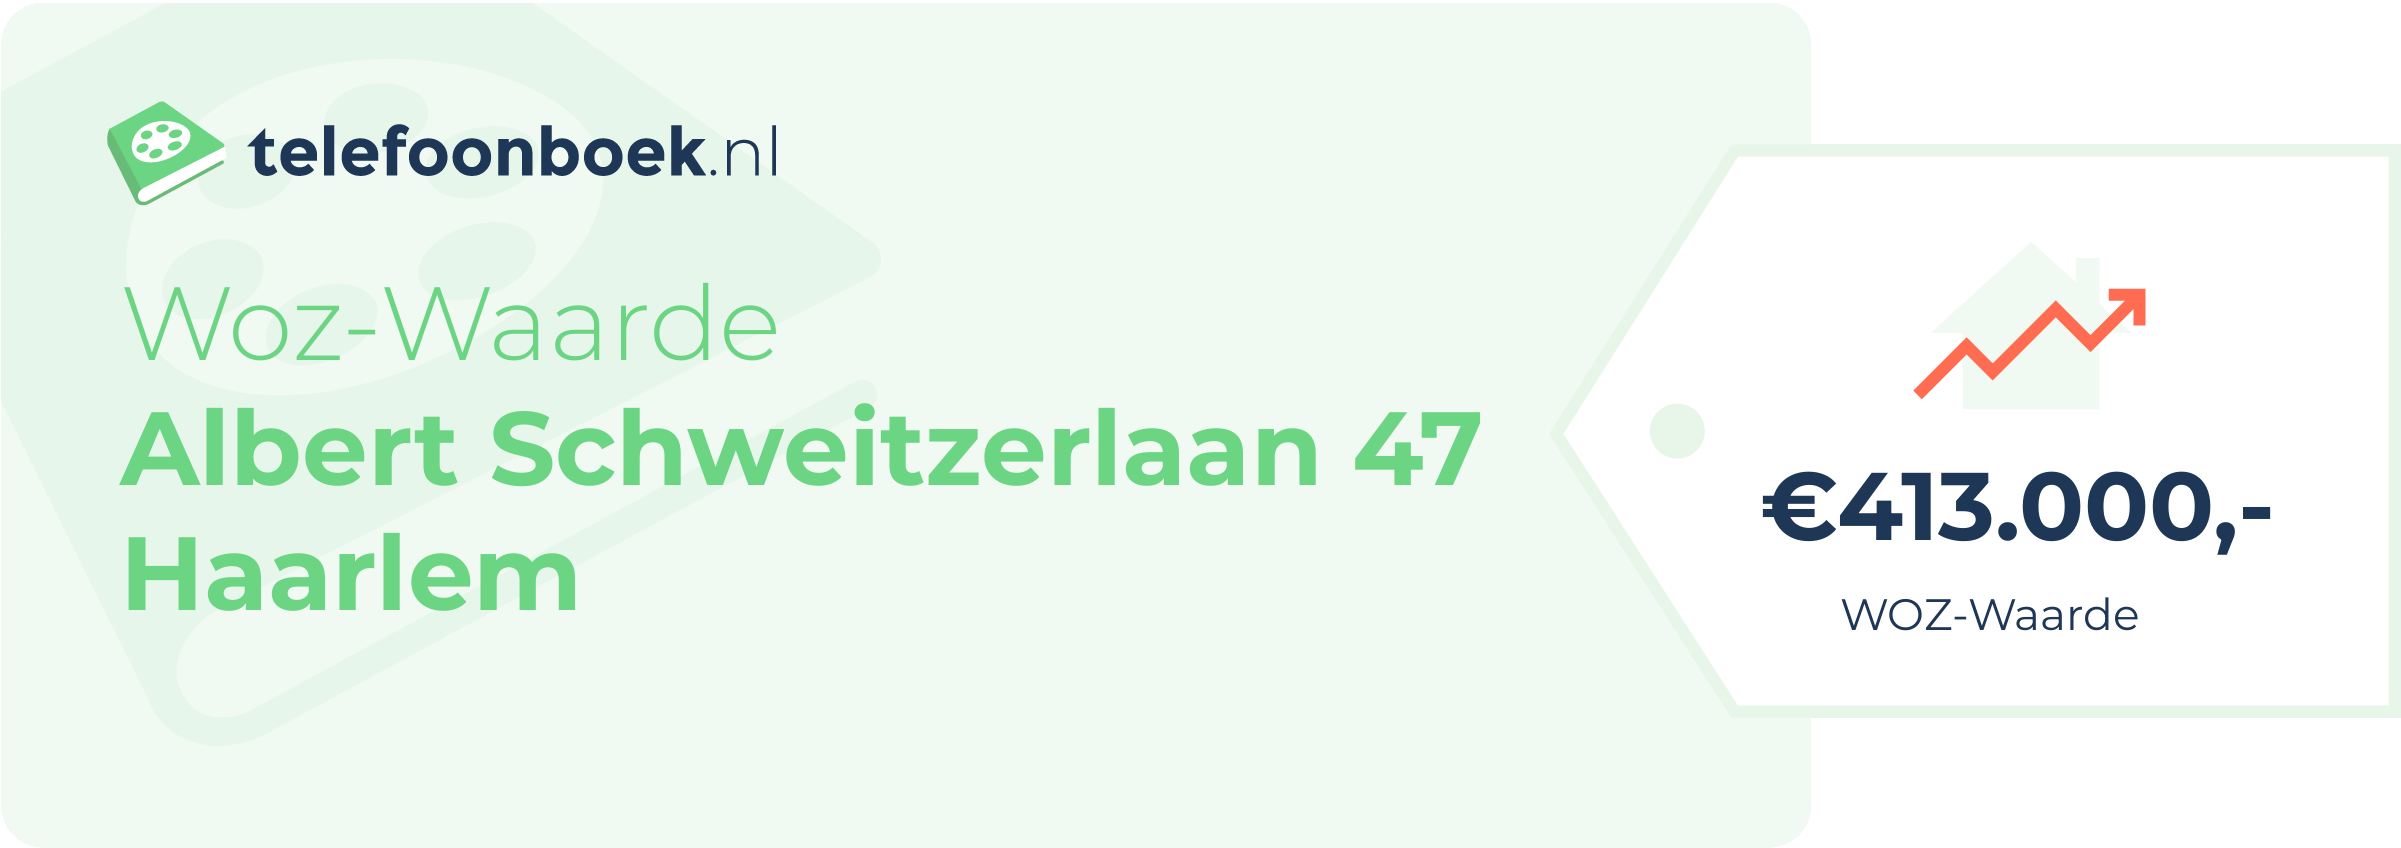 WOZ-waarde Albert Schweitzerlaan 47 Haarlem